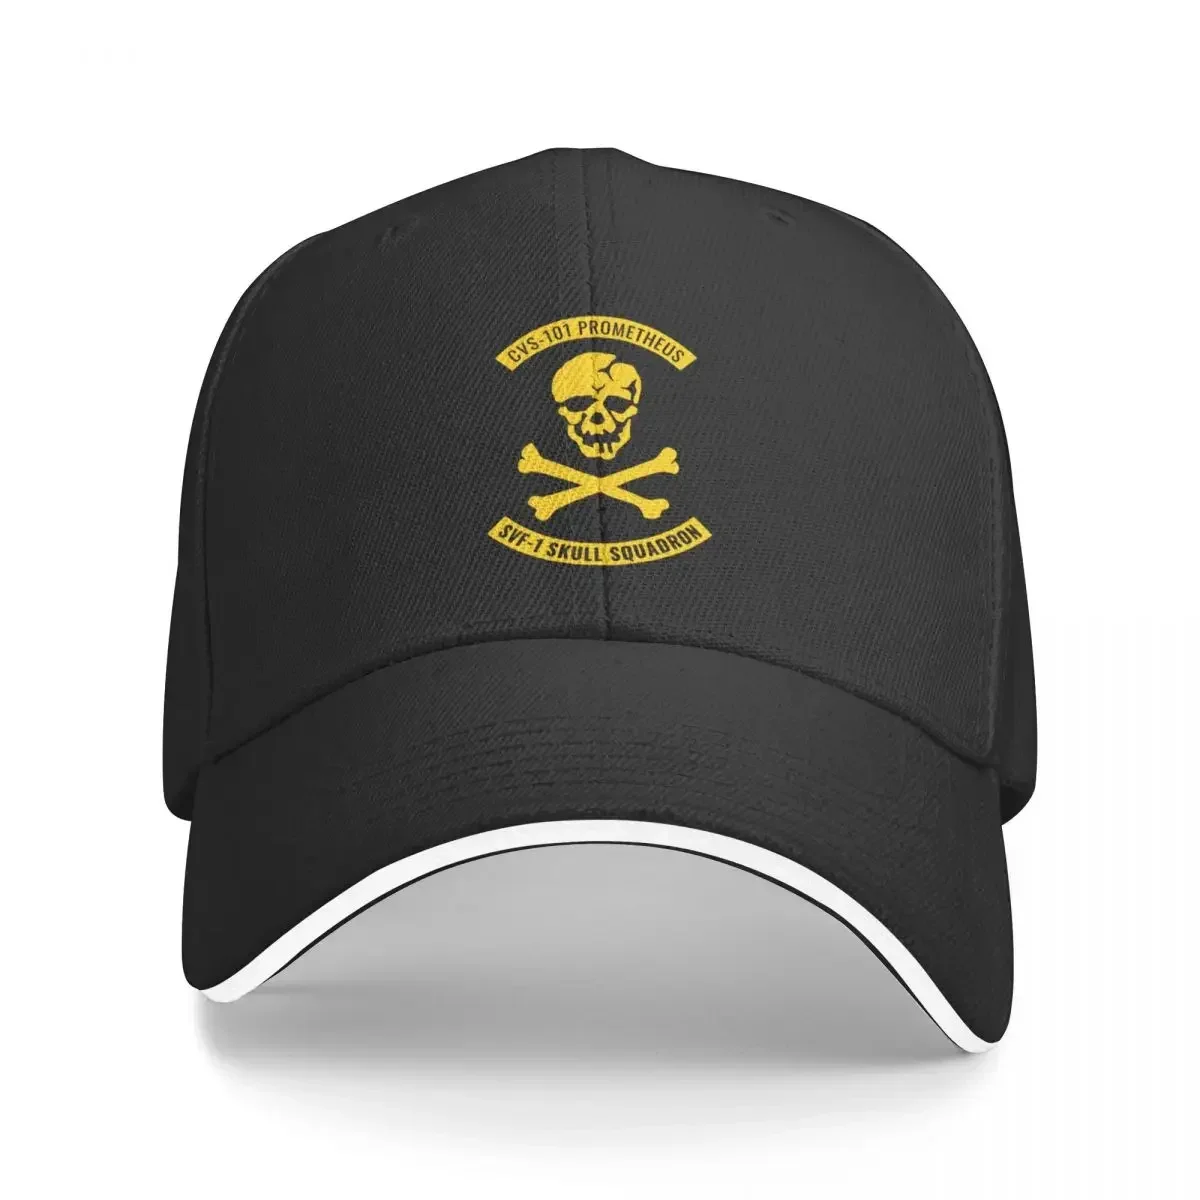 

CVS-101 Prometheus SVF-1 Skull Squadron Patch Baseball Cap Golf Wear Sun Hat For Children Hats For Men Women's